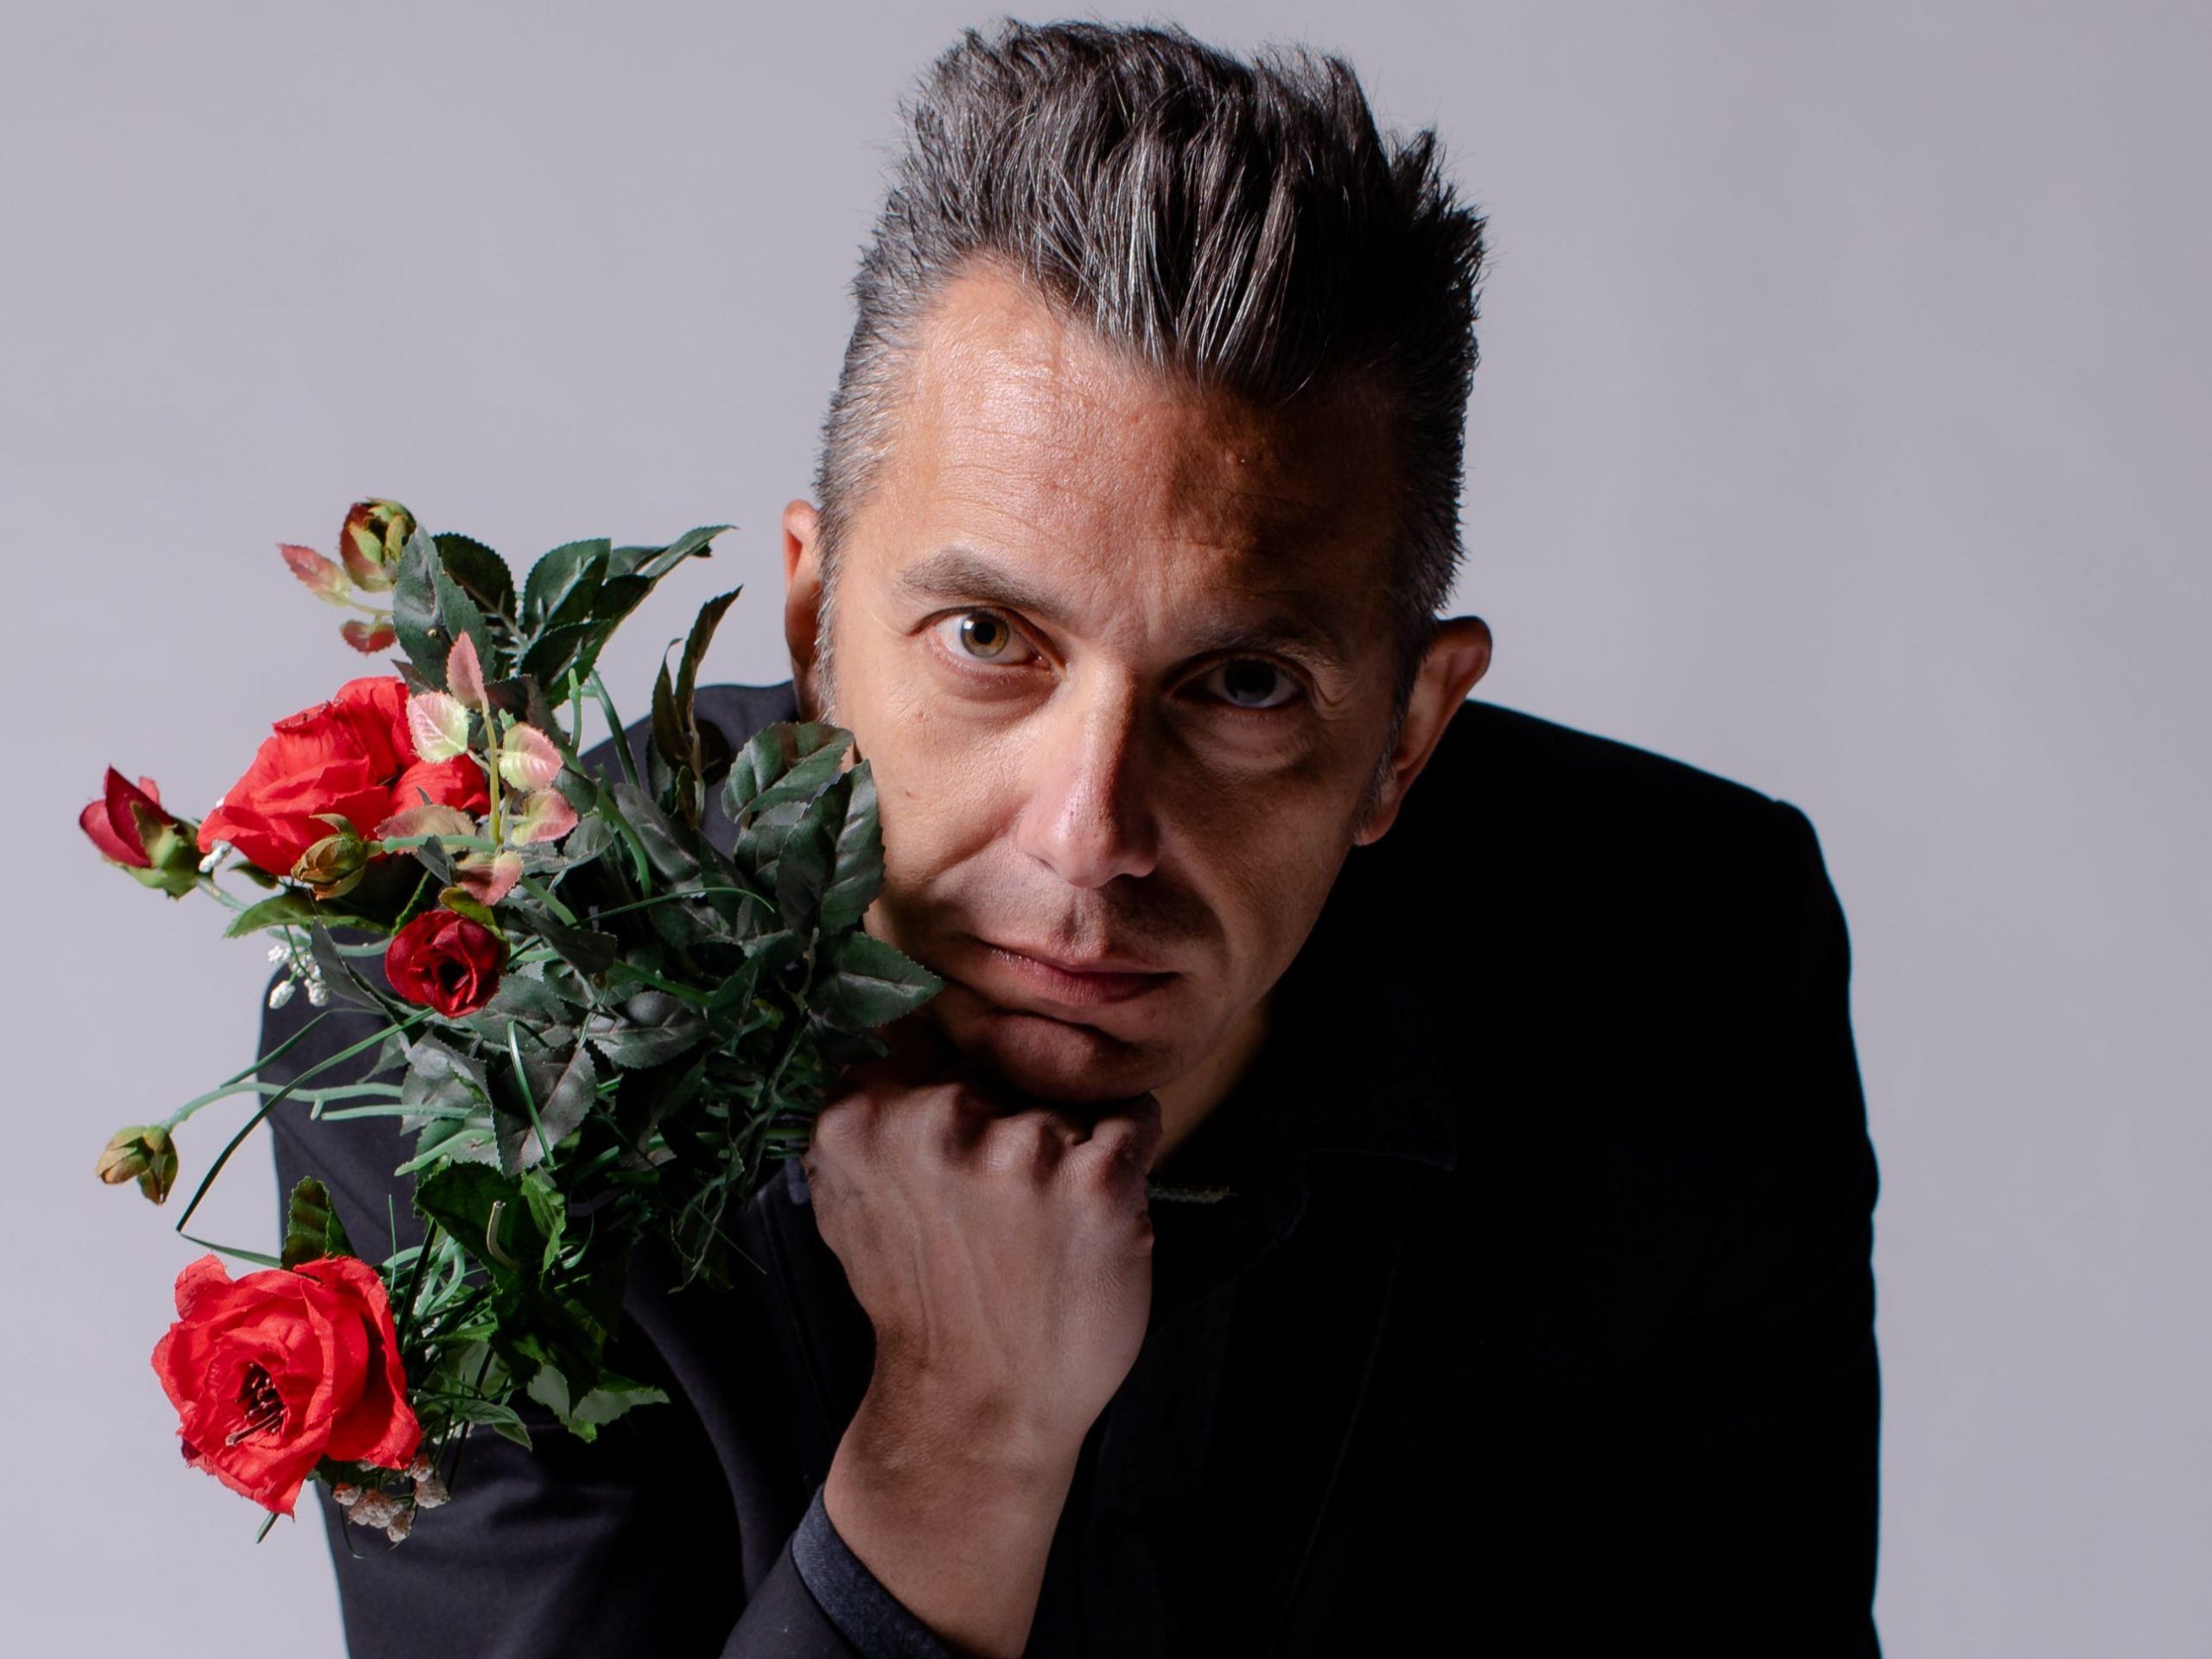 Lorenzo Semprini, esce in radio “Una Notte Così” il nuovo singolo